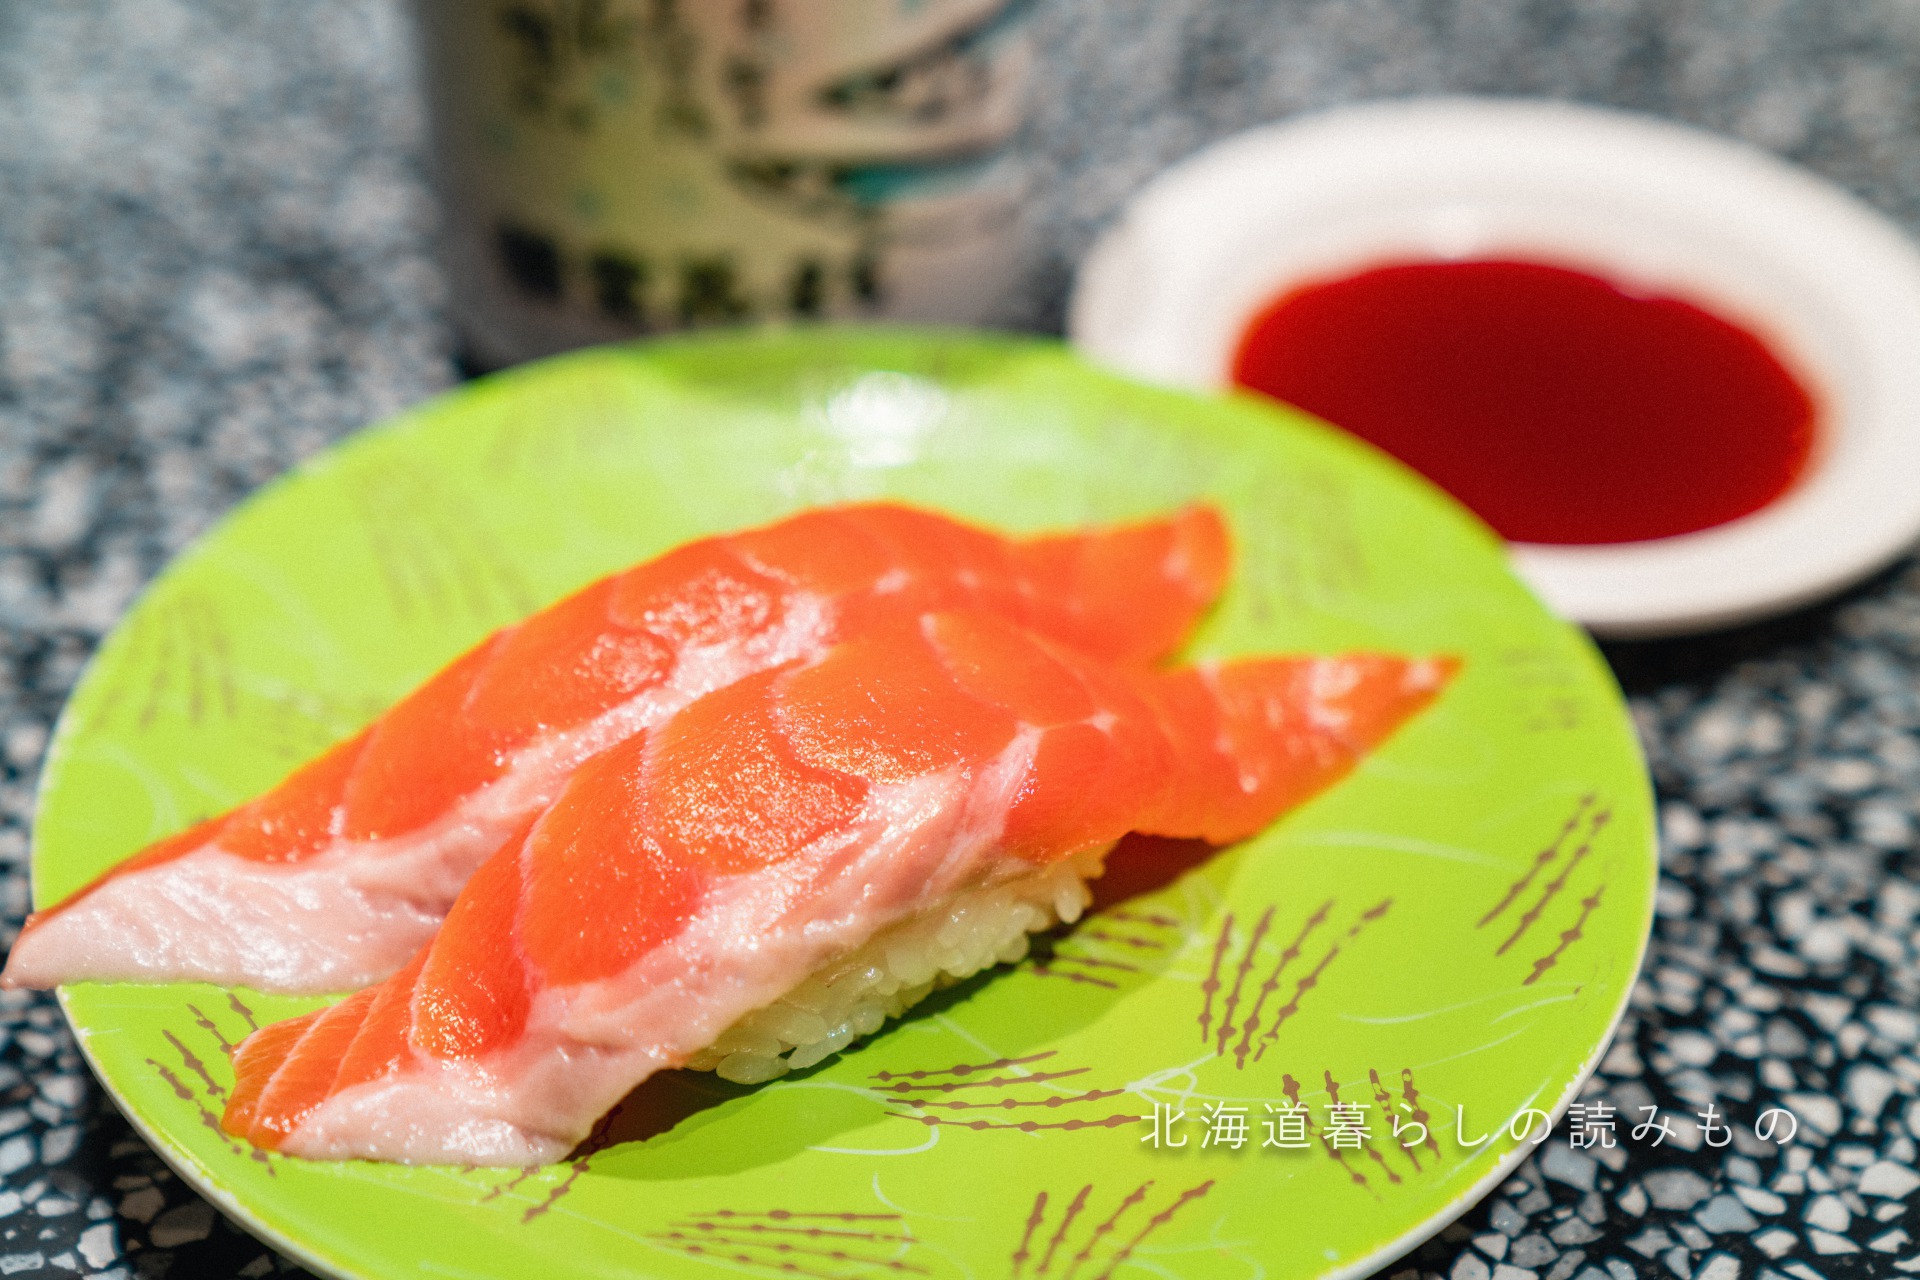 迴轉壽司根室花丸的菜單上的「三文魚」